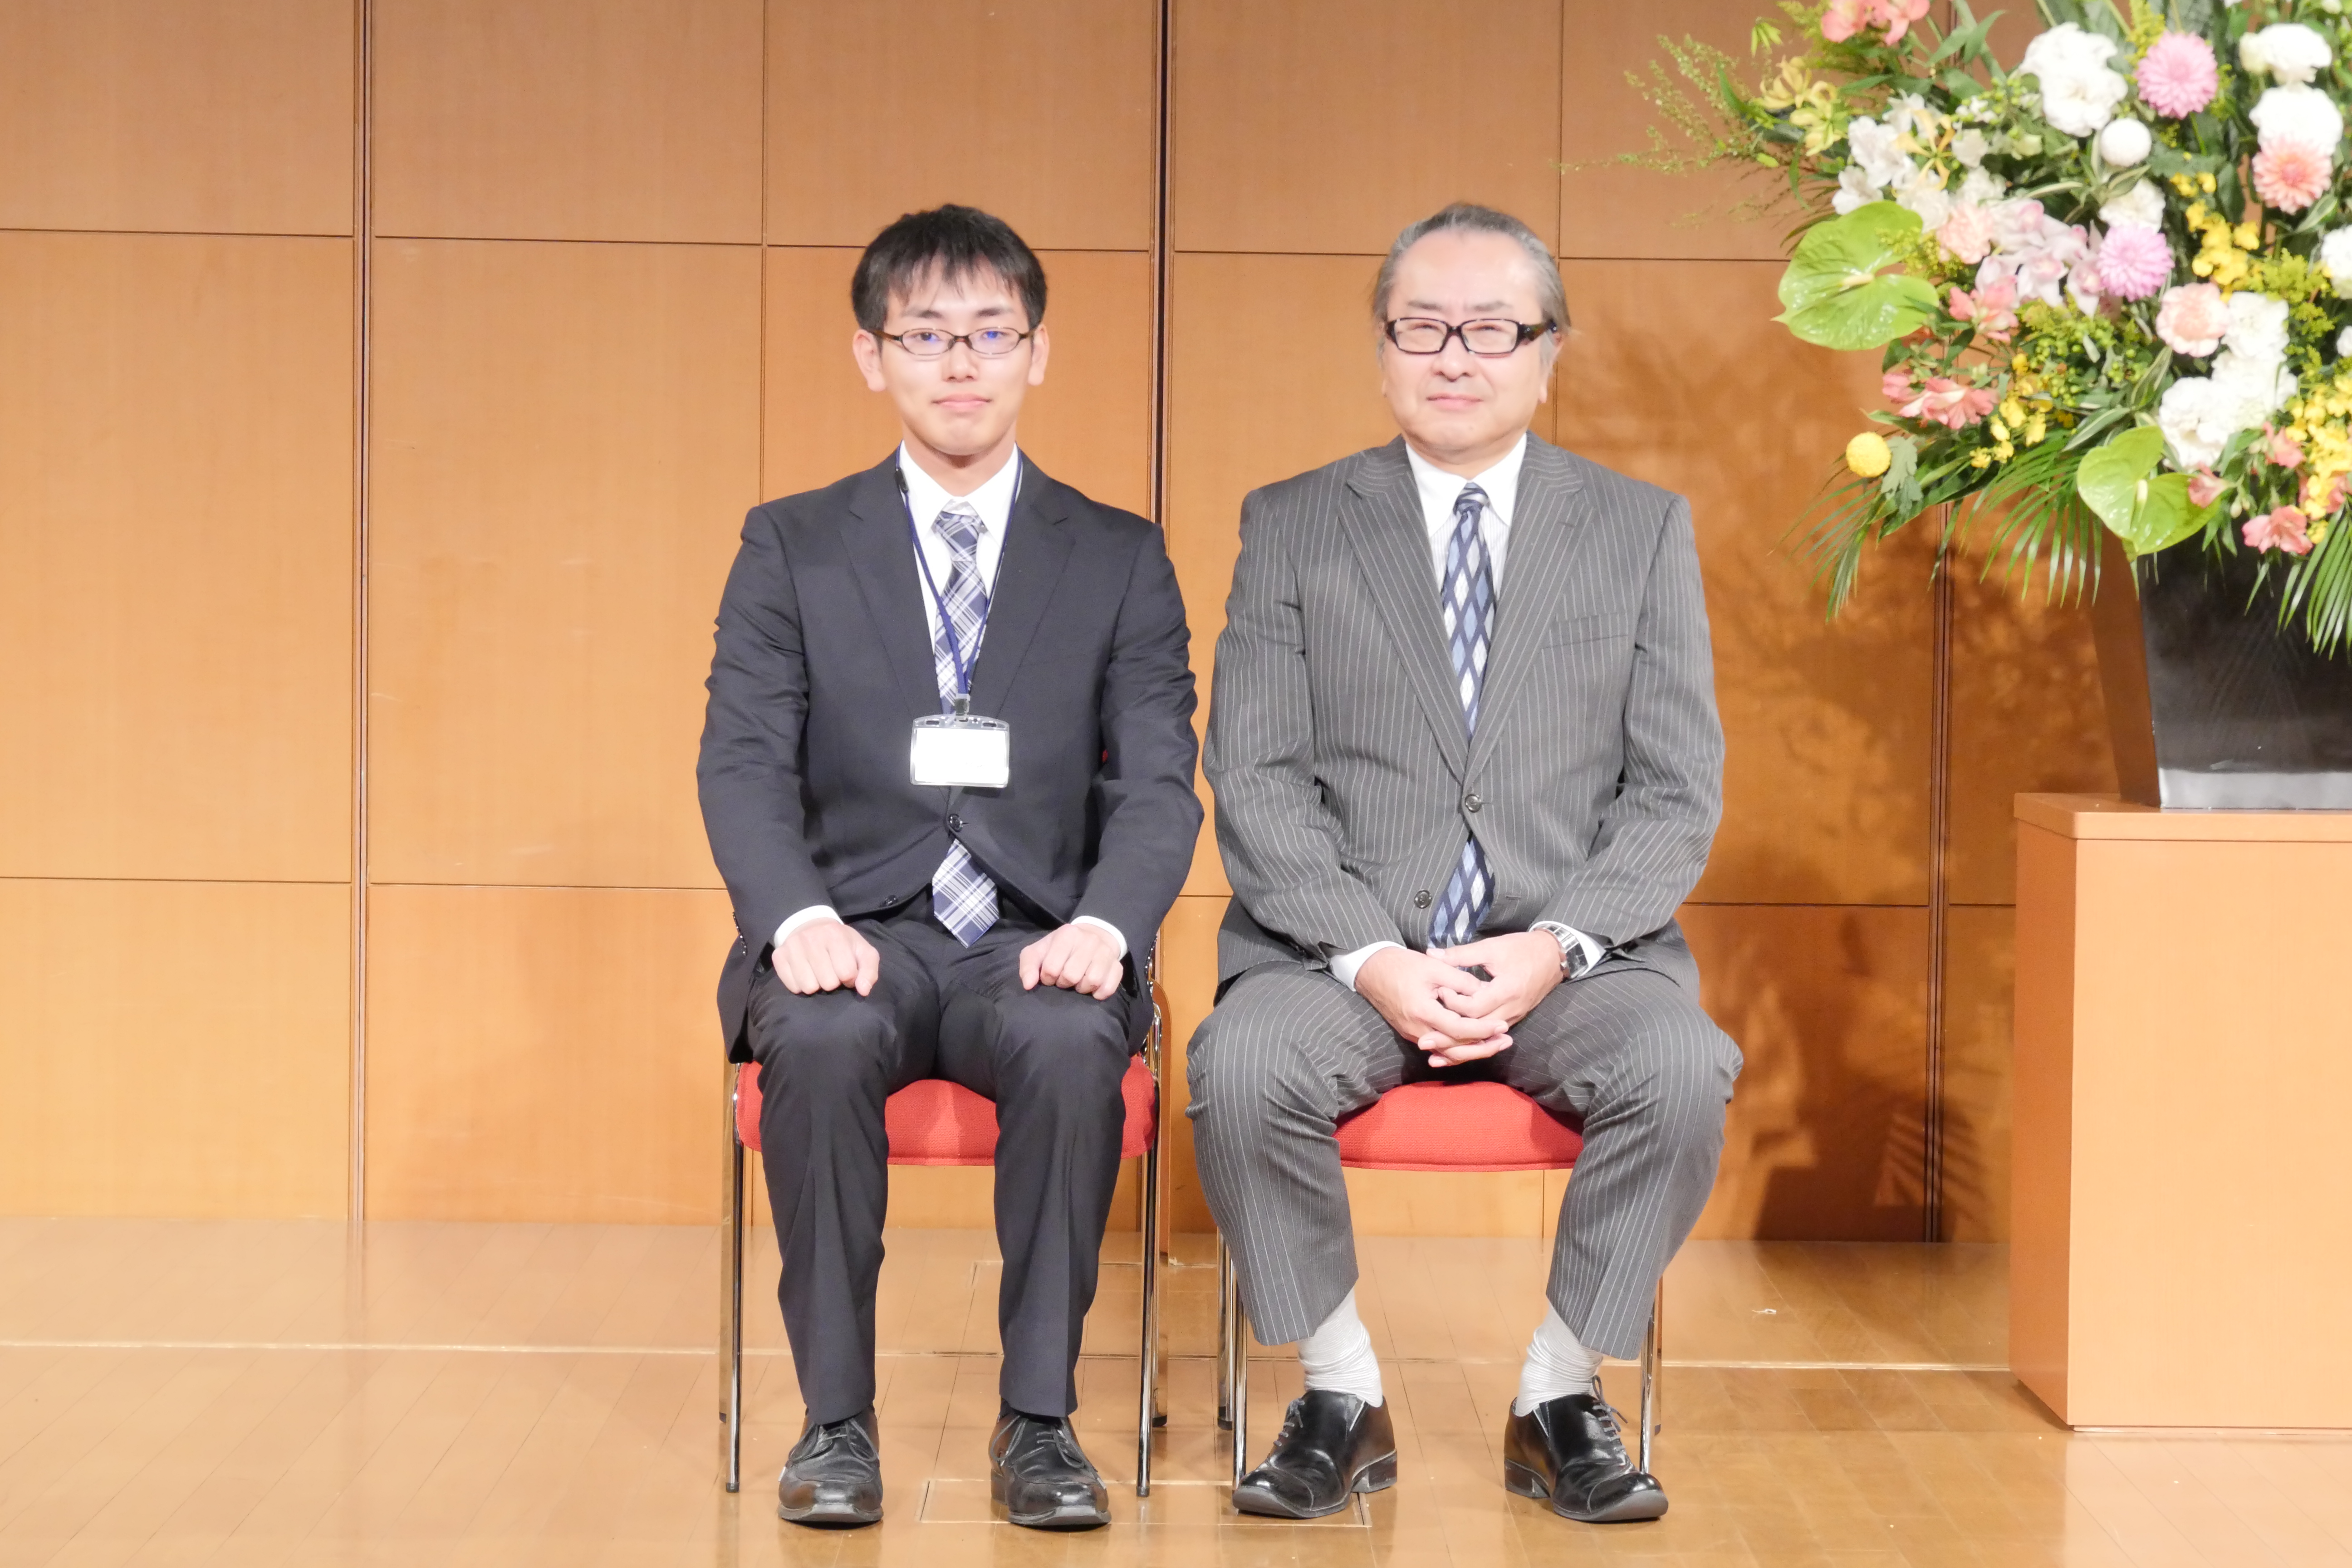 左から、いばらきコープ 新人職員、柴崎敏男専務理事